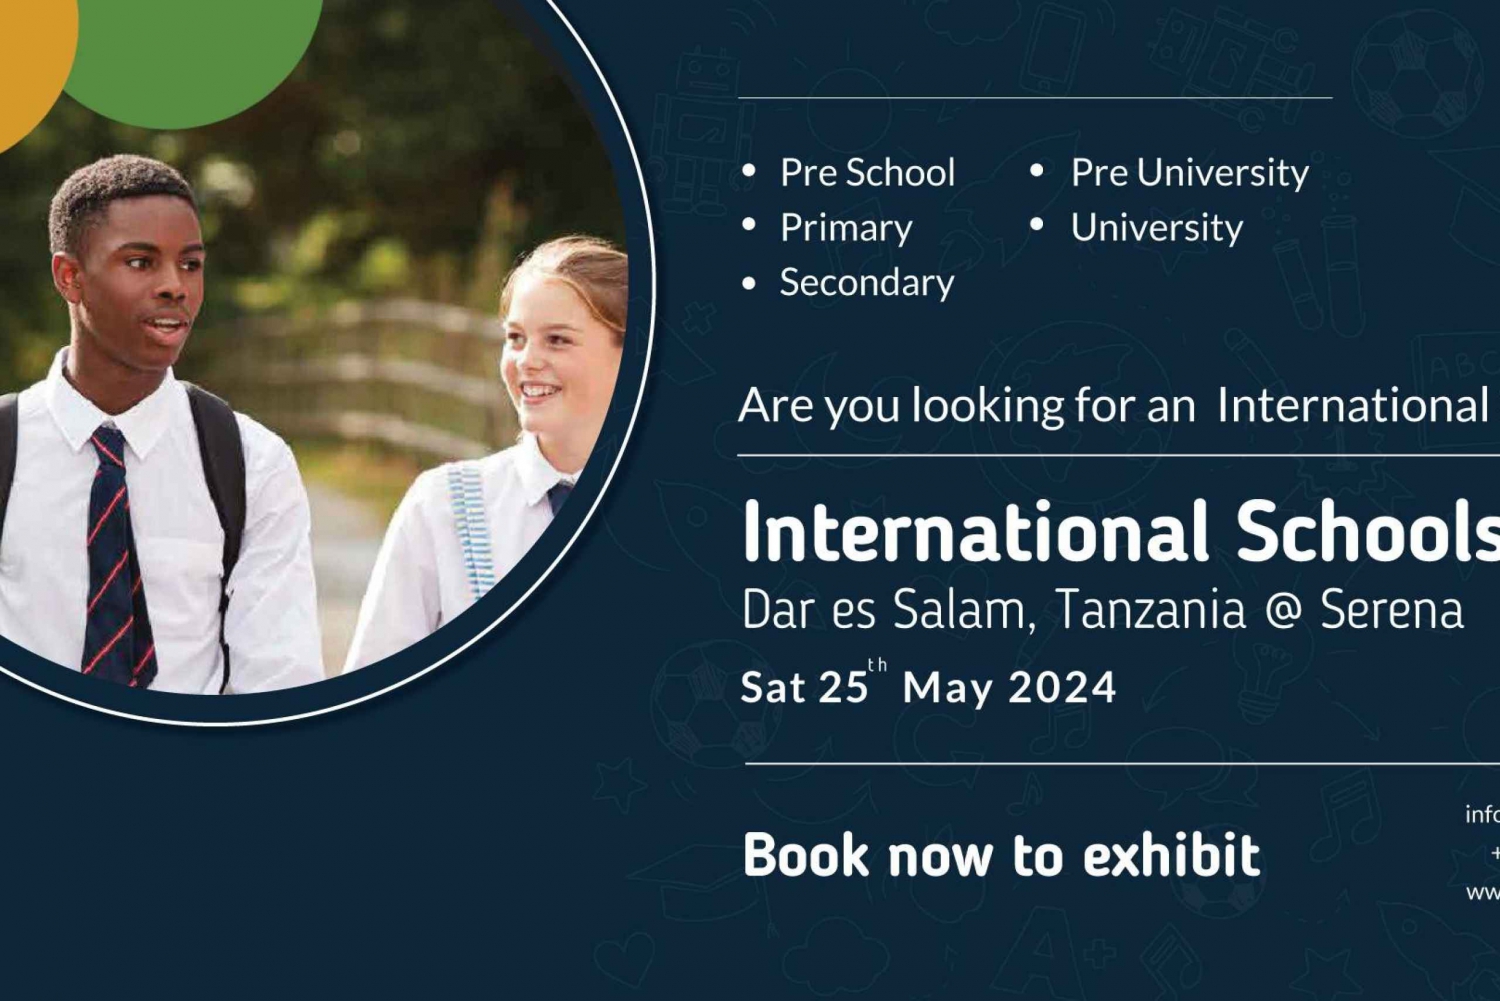 Dar es Salaam: Feira Internacional de Educação Escolar